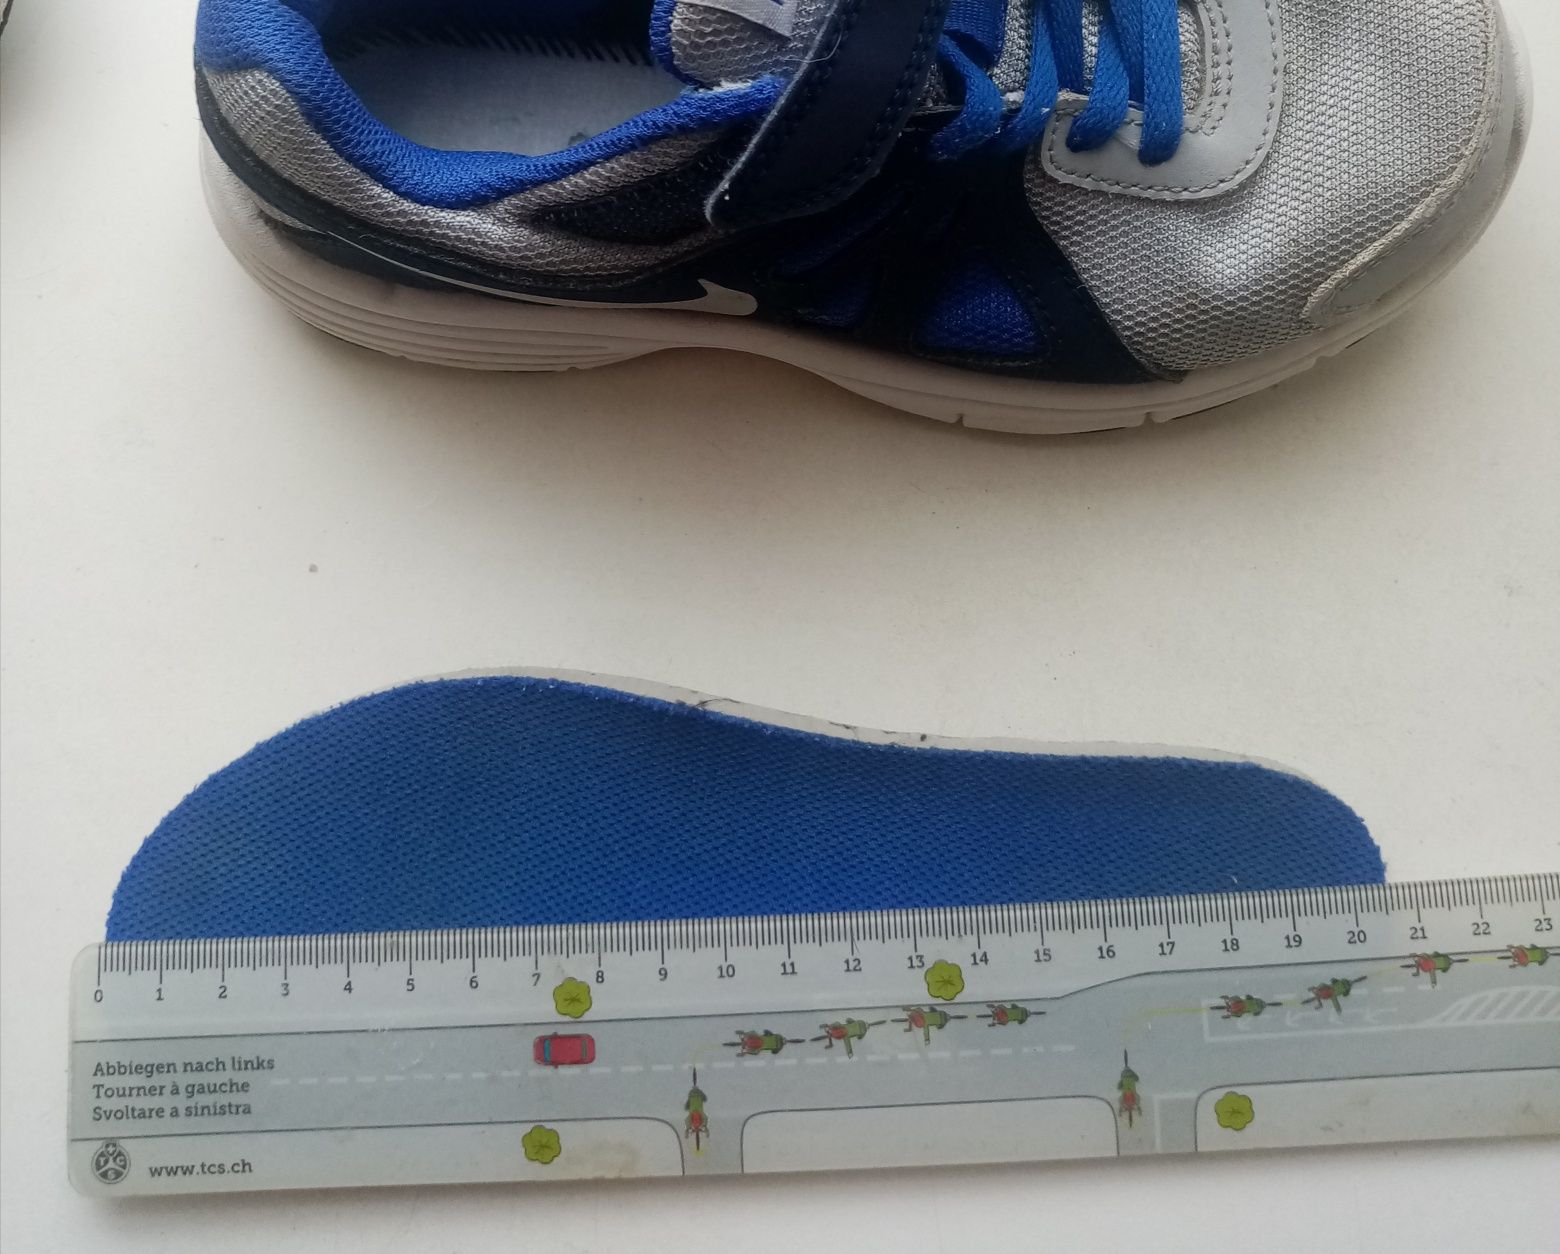 19,5-20 см. Детские кроссовки Nike REVOLUTION 2 (оригинал)